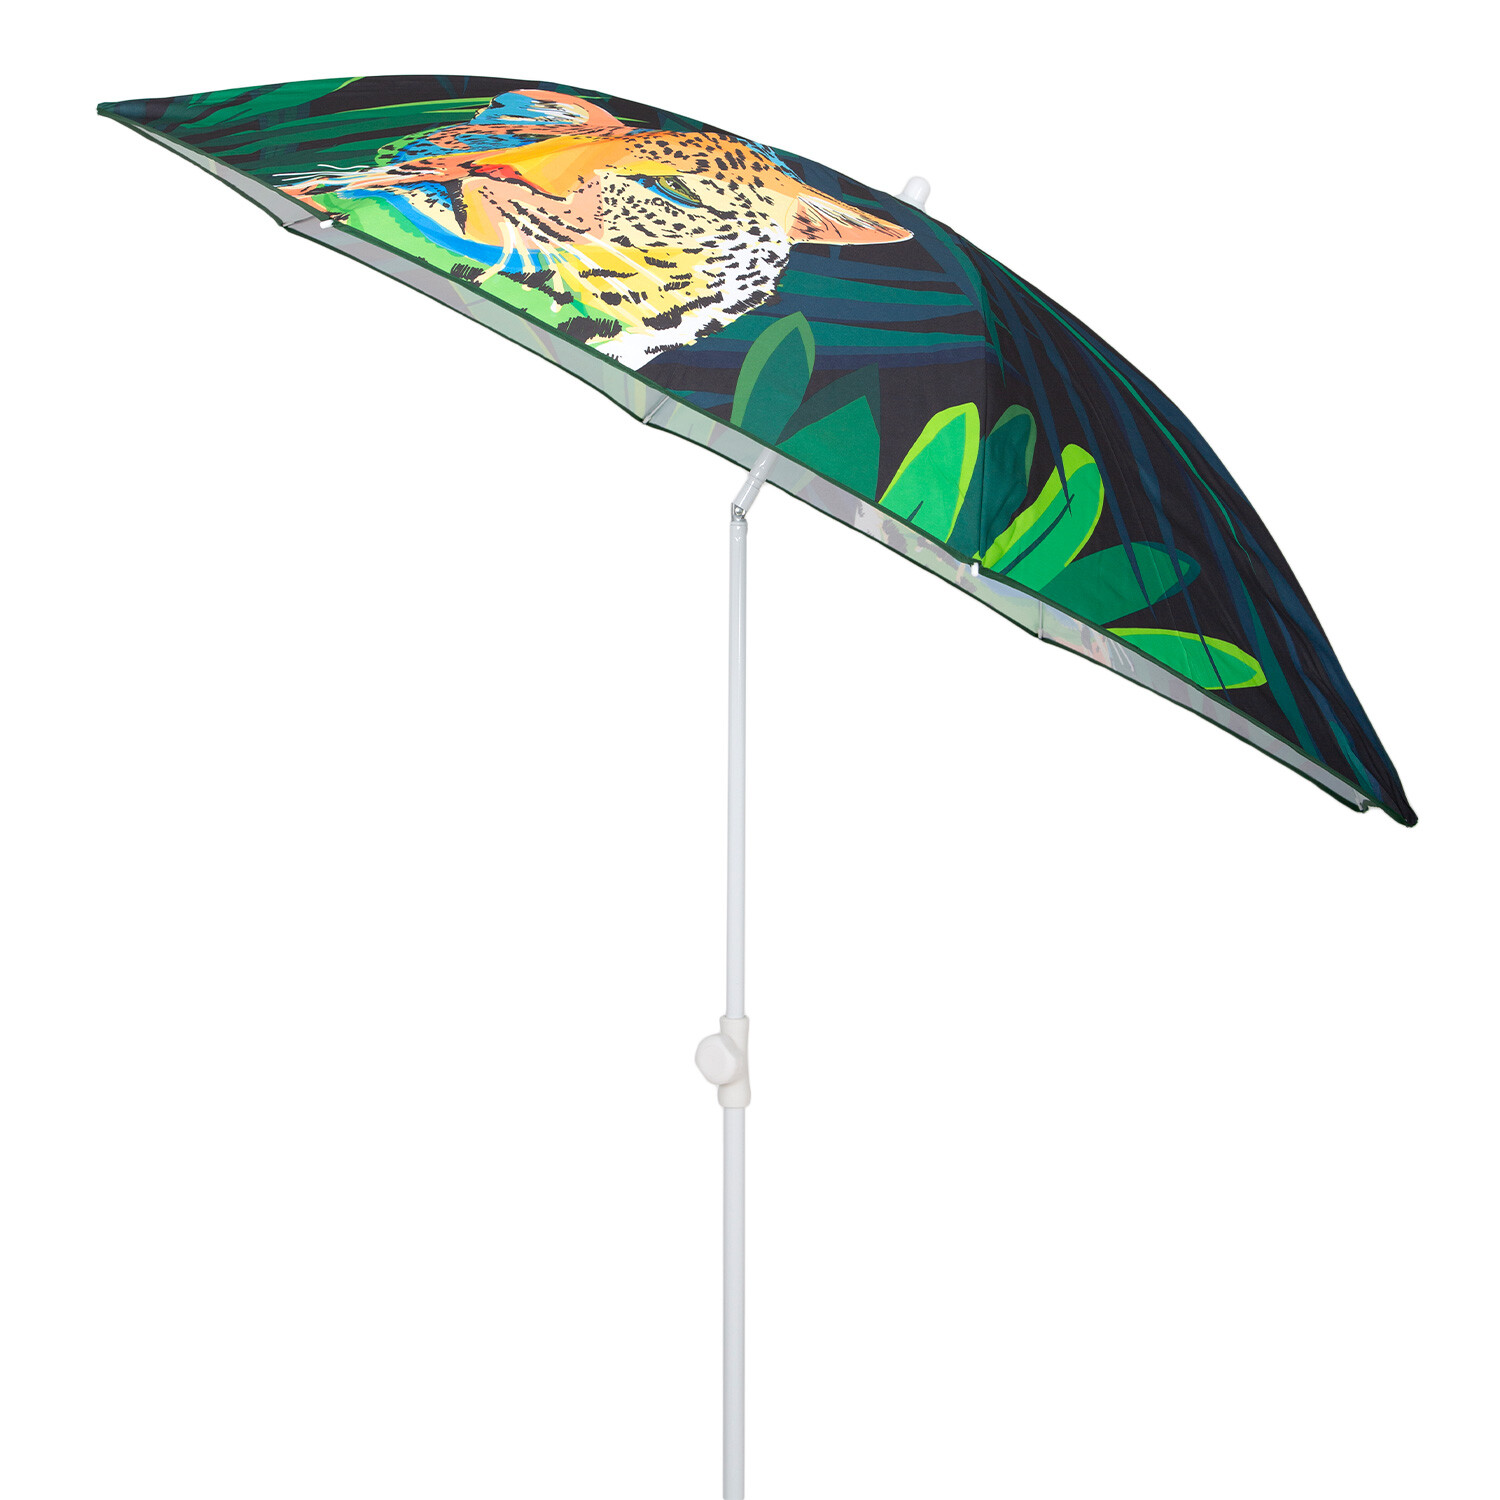 Leopard Print Green Beach Umbrella Parasol 1.7m Image 2